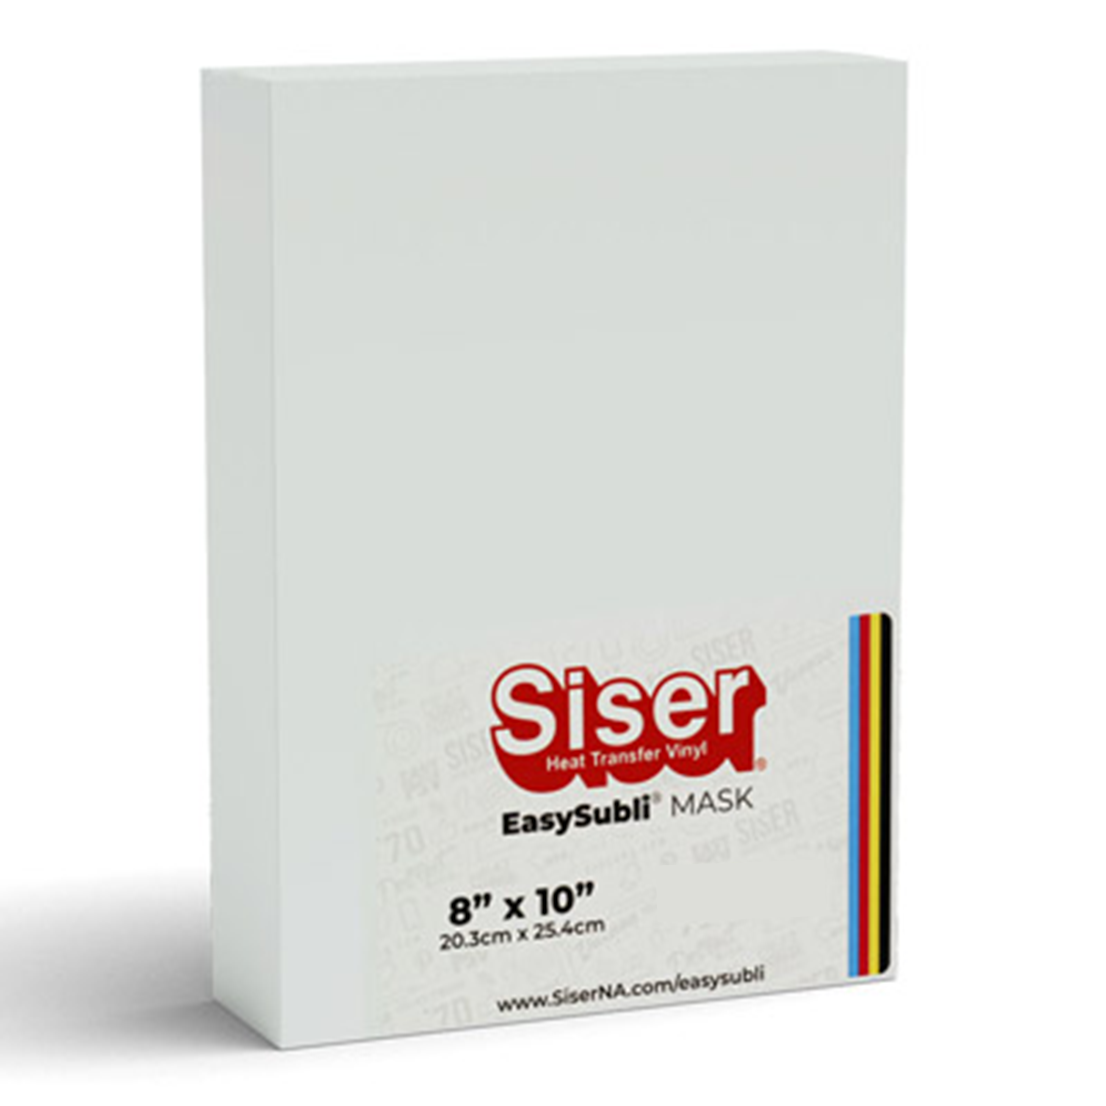 Siser® Mask for EasySubli® Sheets